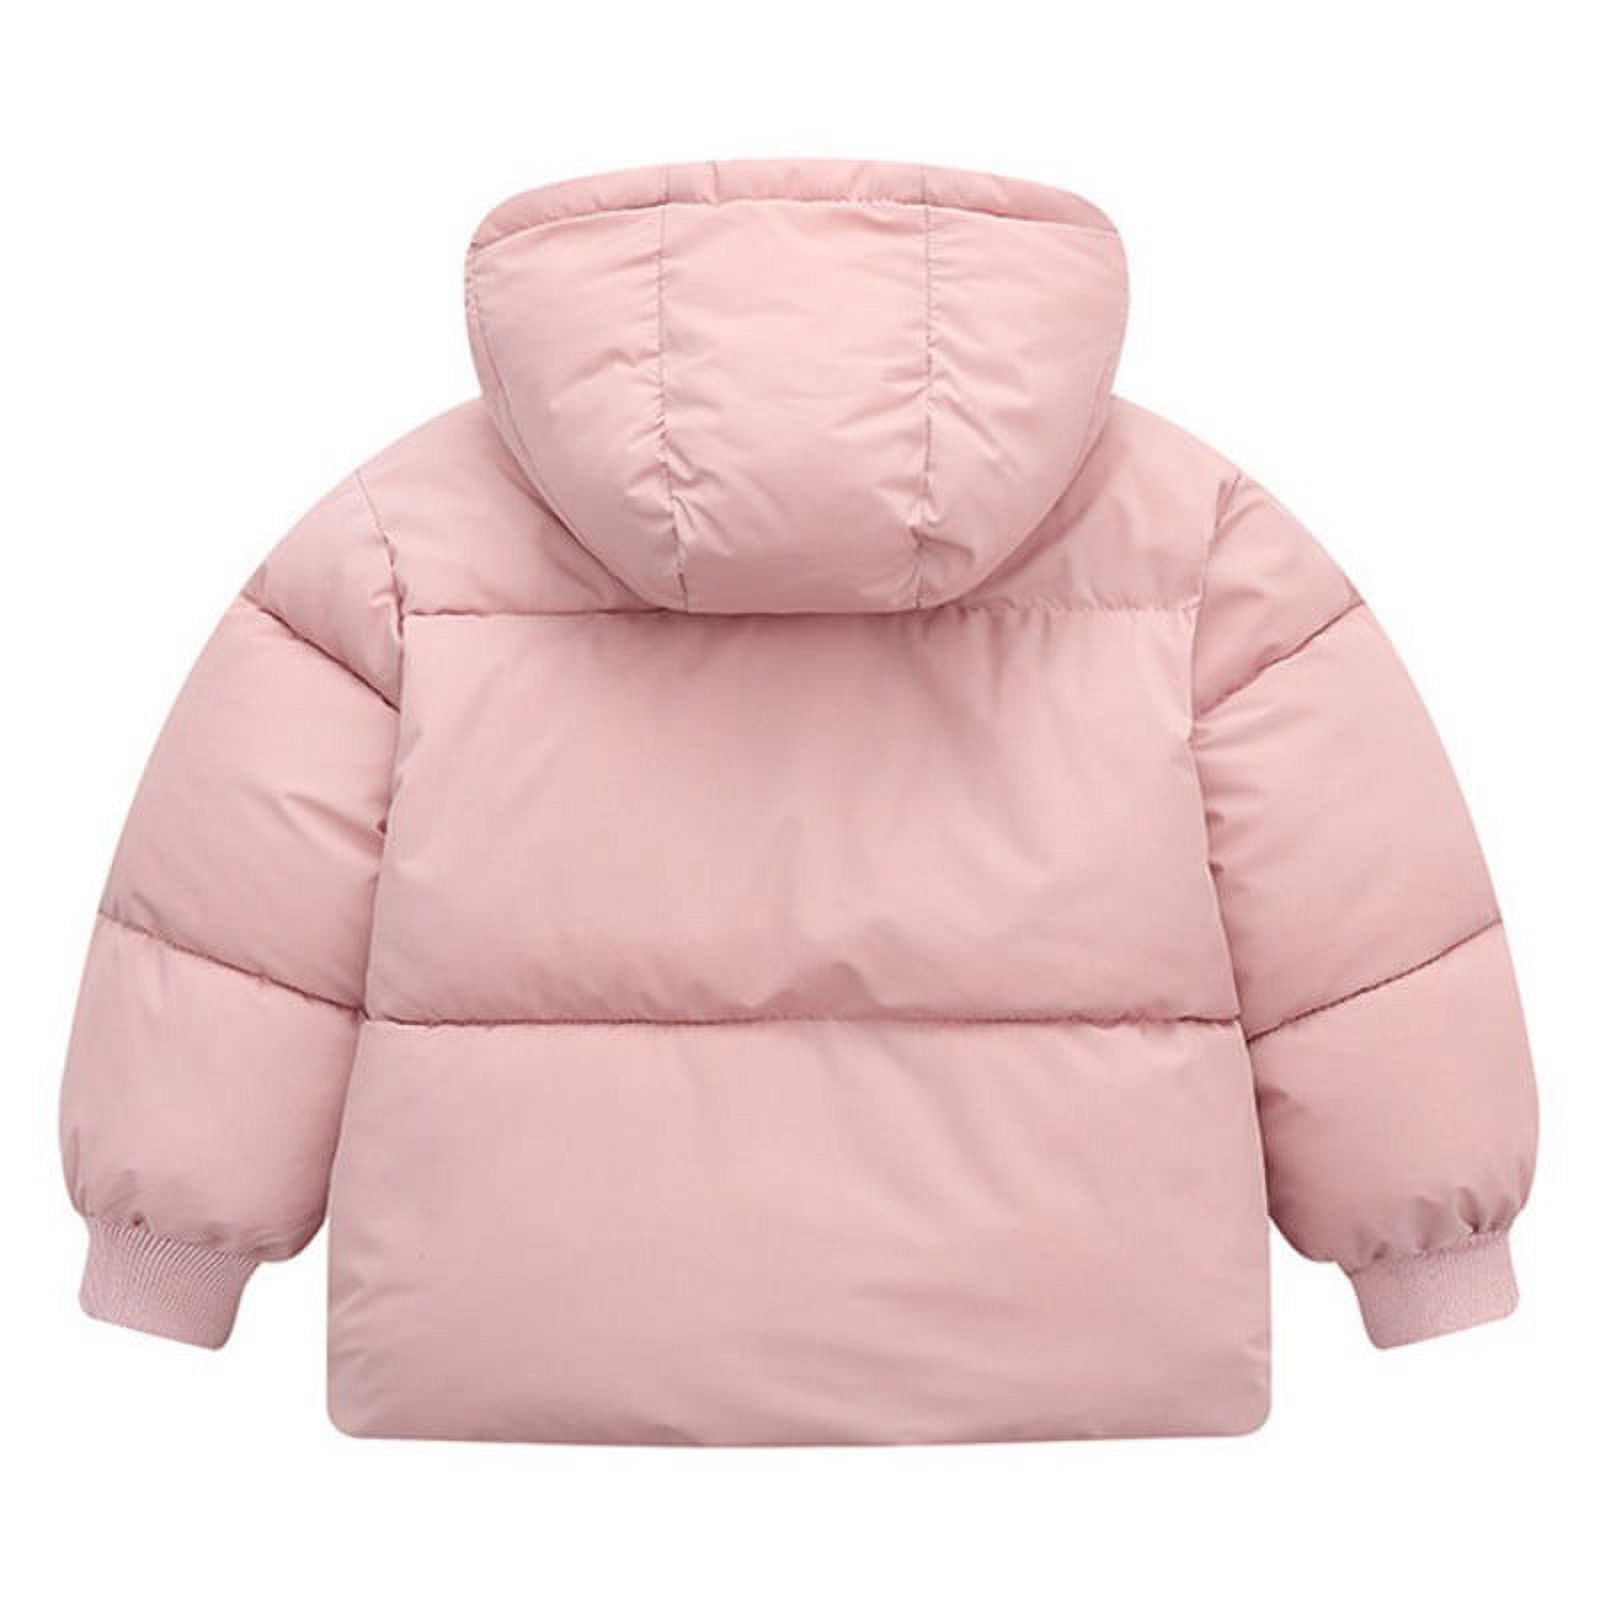 Boys Girls Hooded Down Jacket Winter Warm Fleece Coat Windproof Zipper Puffer Outerwear 18M-6T - image 2 of 5